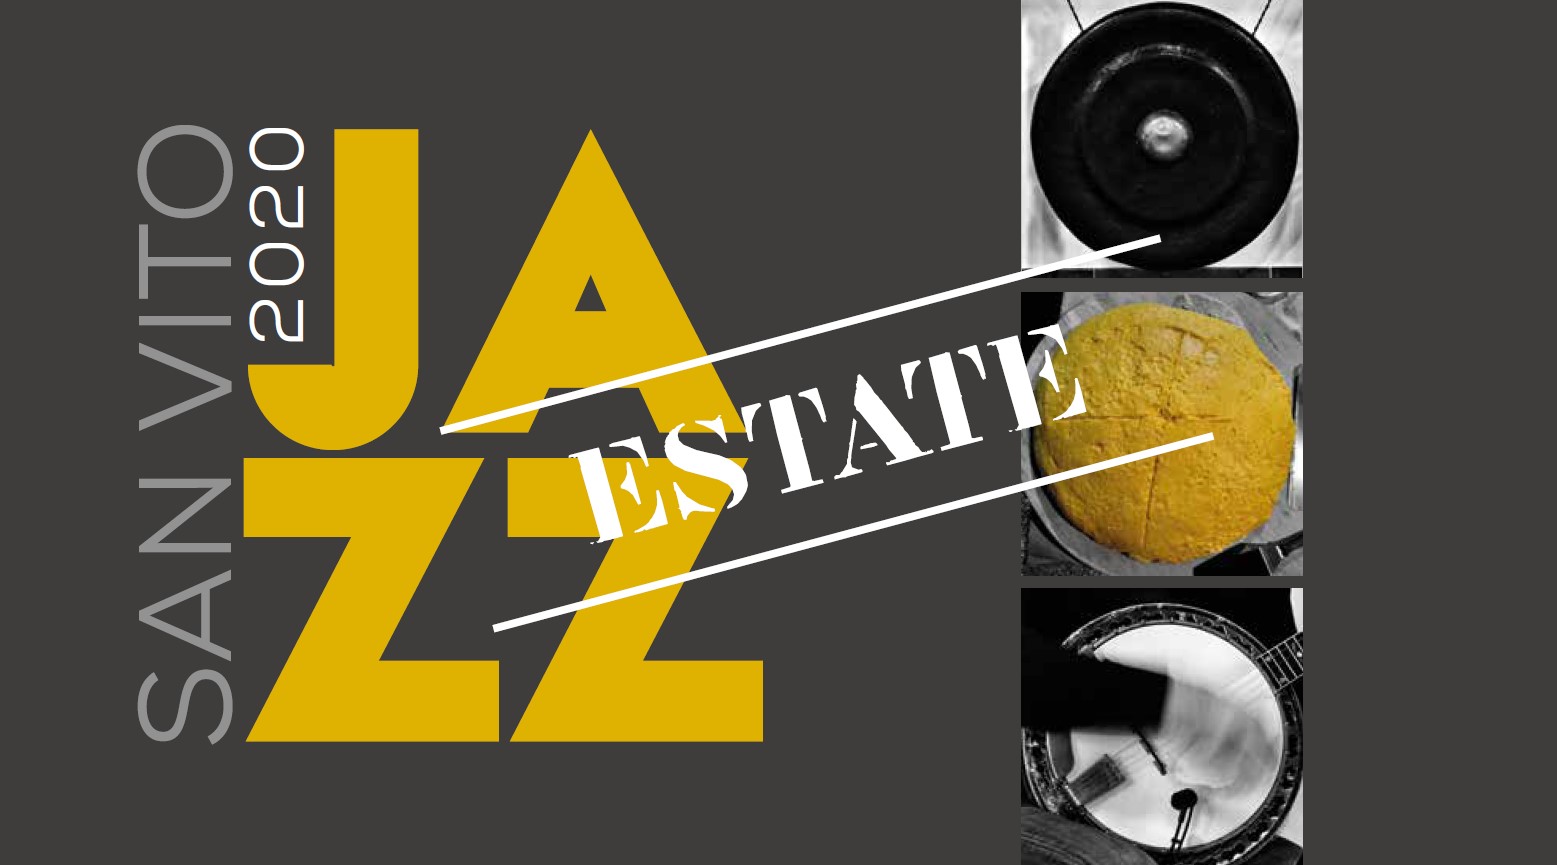 Scopri di più sull'articolo San Vito Jazz 2020, concerti il 17, 24 e 31 luglio in piazza Stadtlohn